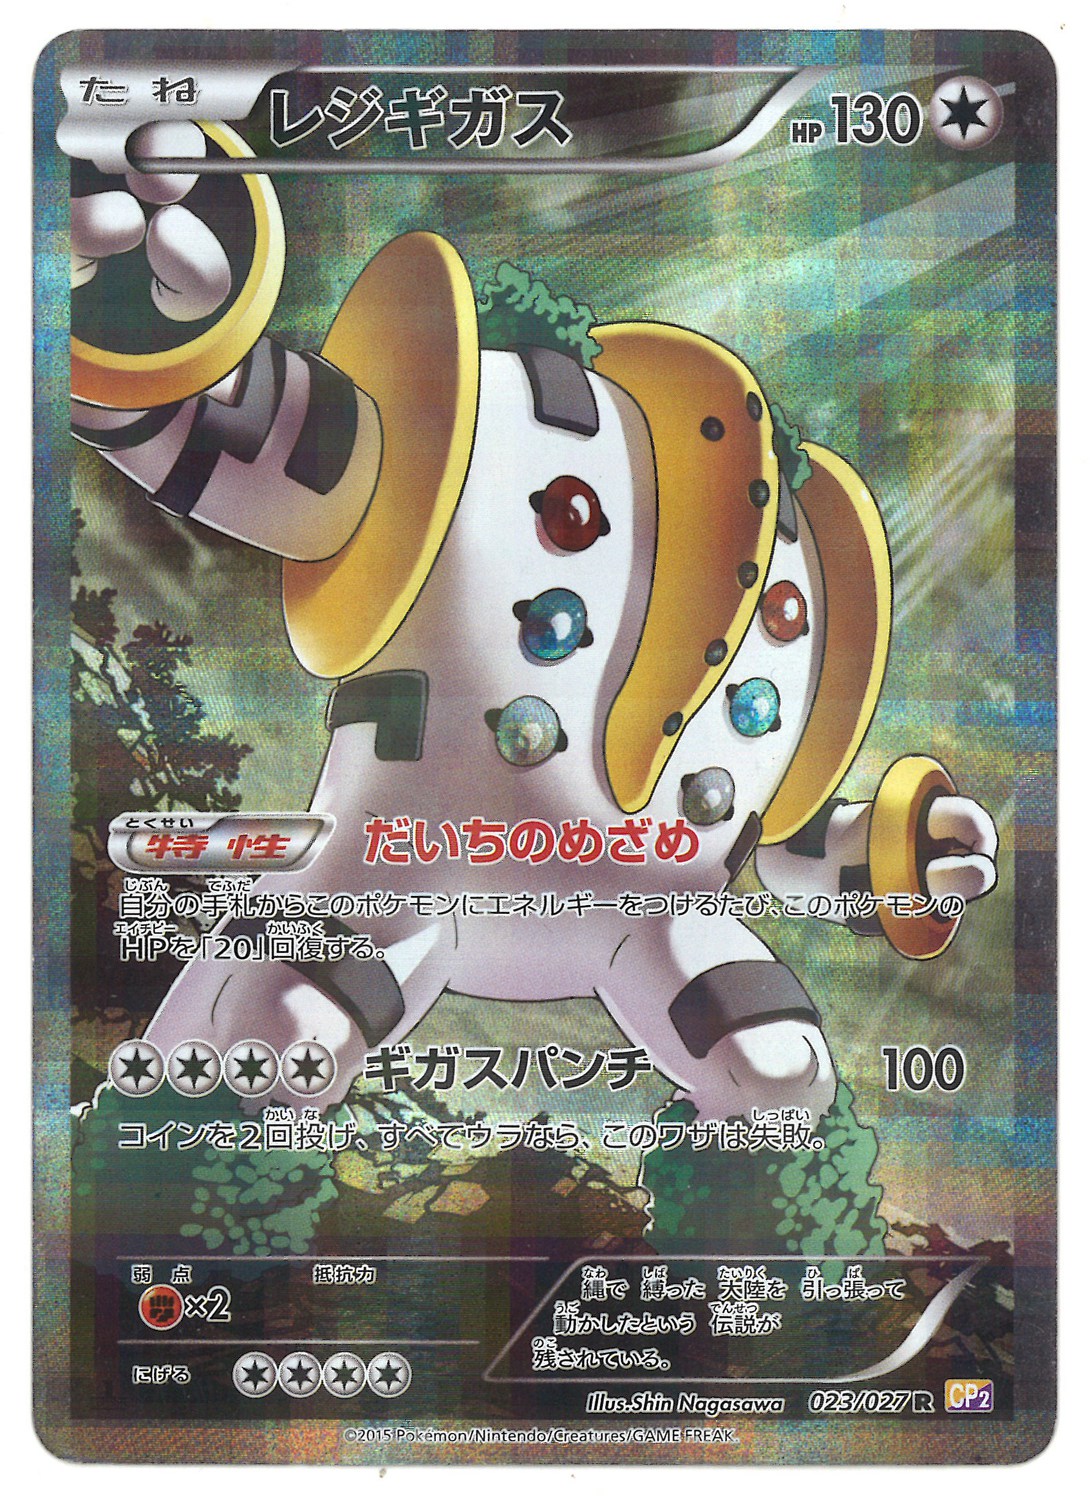 Pokemon Xy 伝説キラコレクション 023 027 レジギガス R Cp2 まんだらけ Mandarake